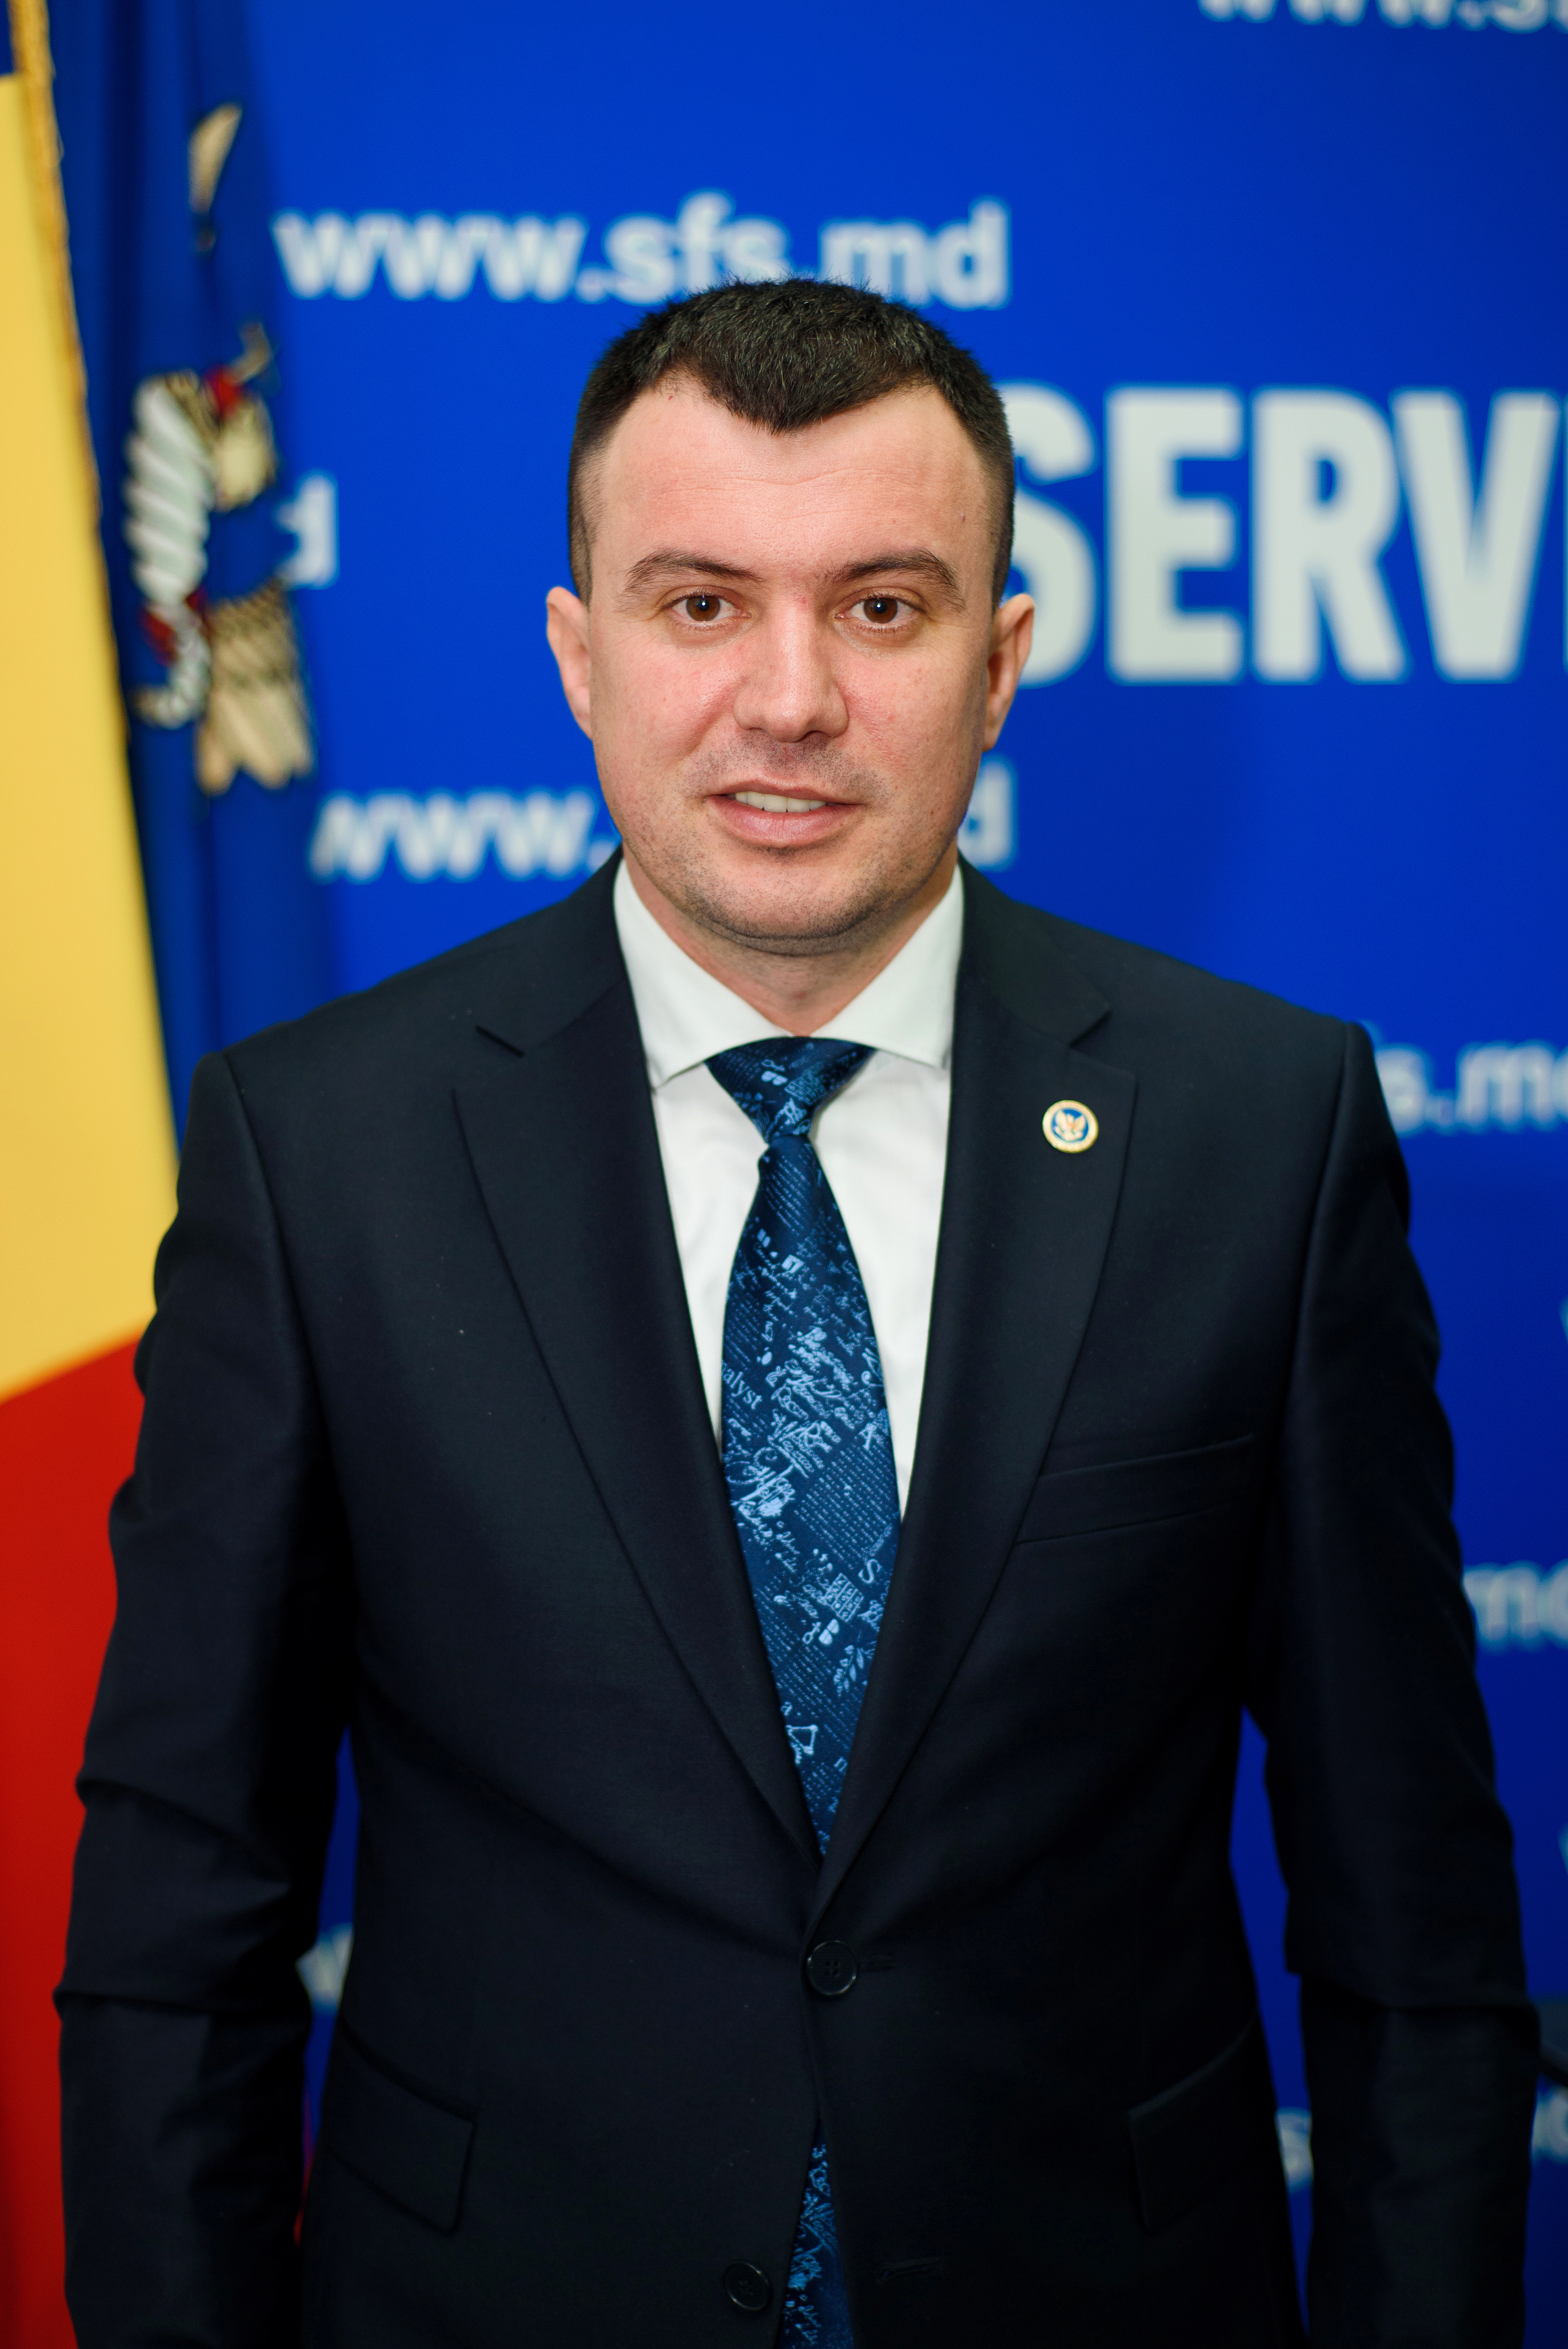 Petru Rotaru - Directorul Servic﻿iului Fiscal de Stat